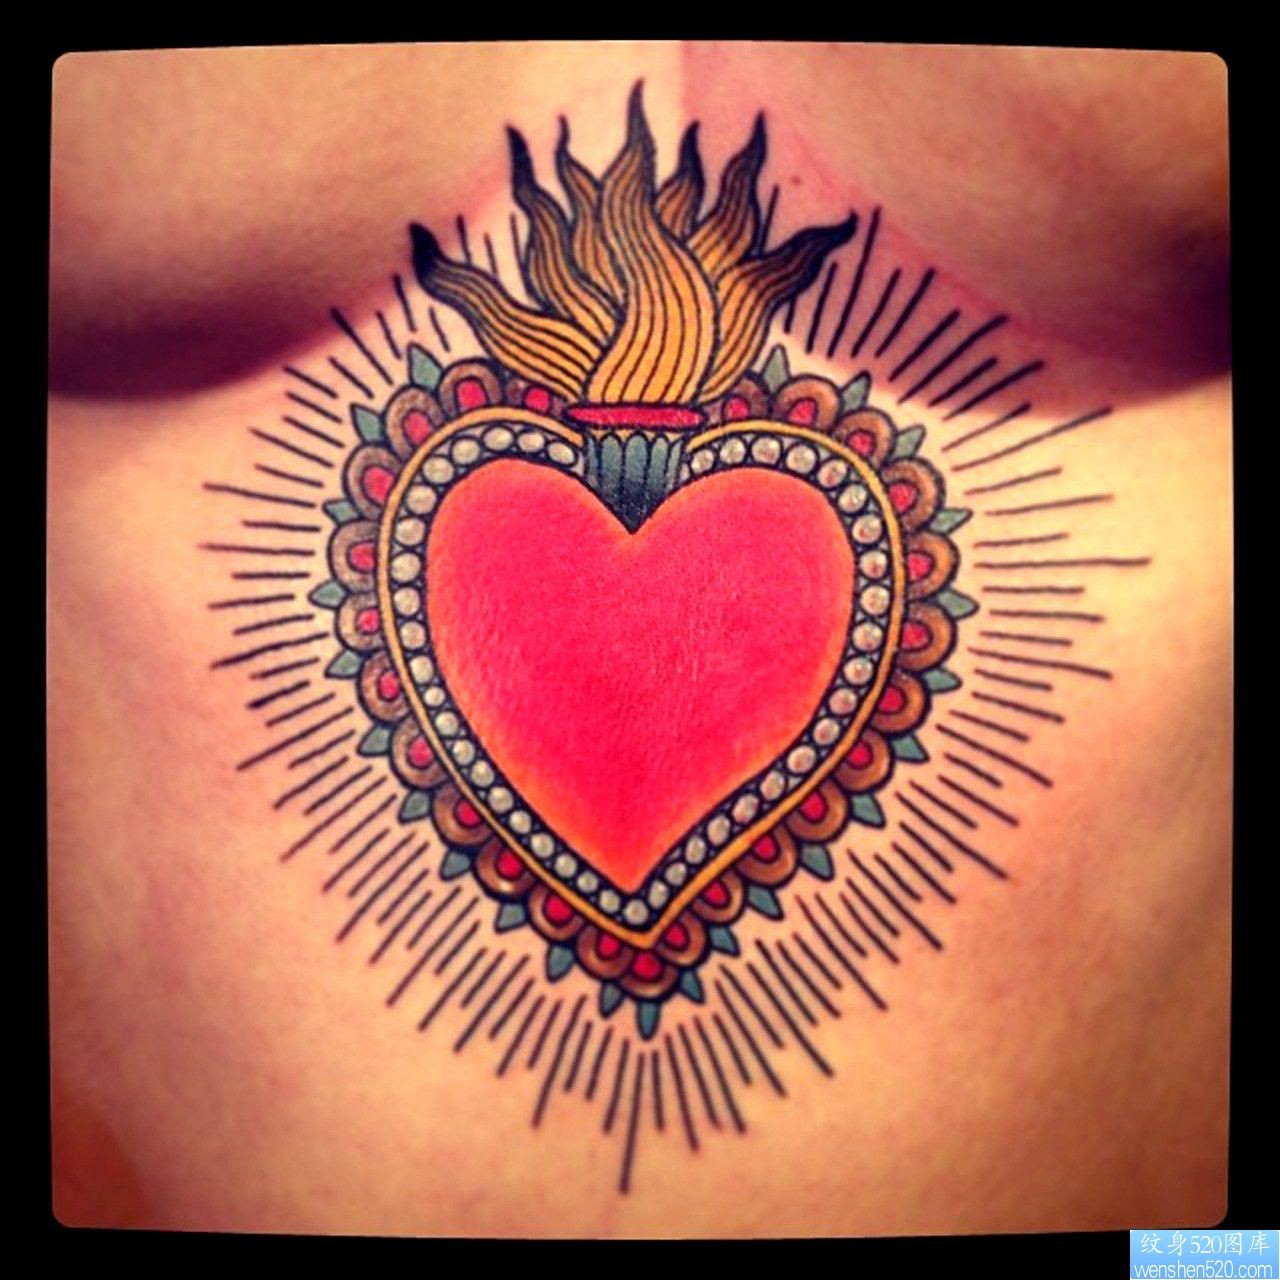 欣赏一幅胸部下面的爱心纹身图片